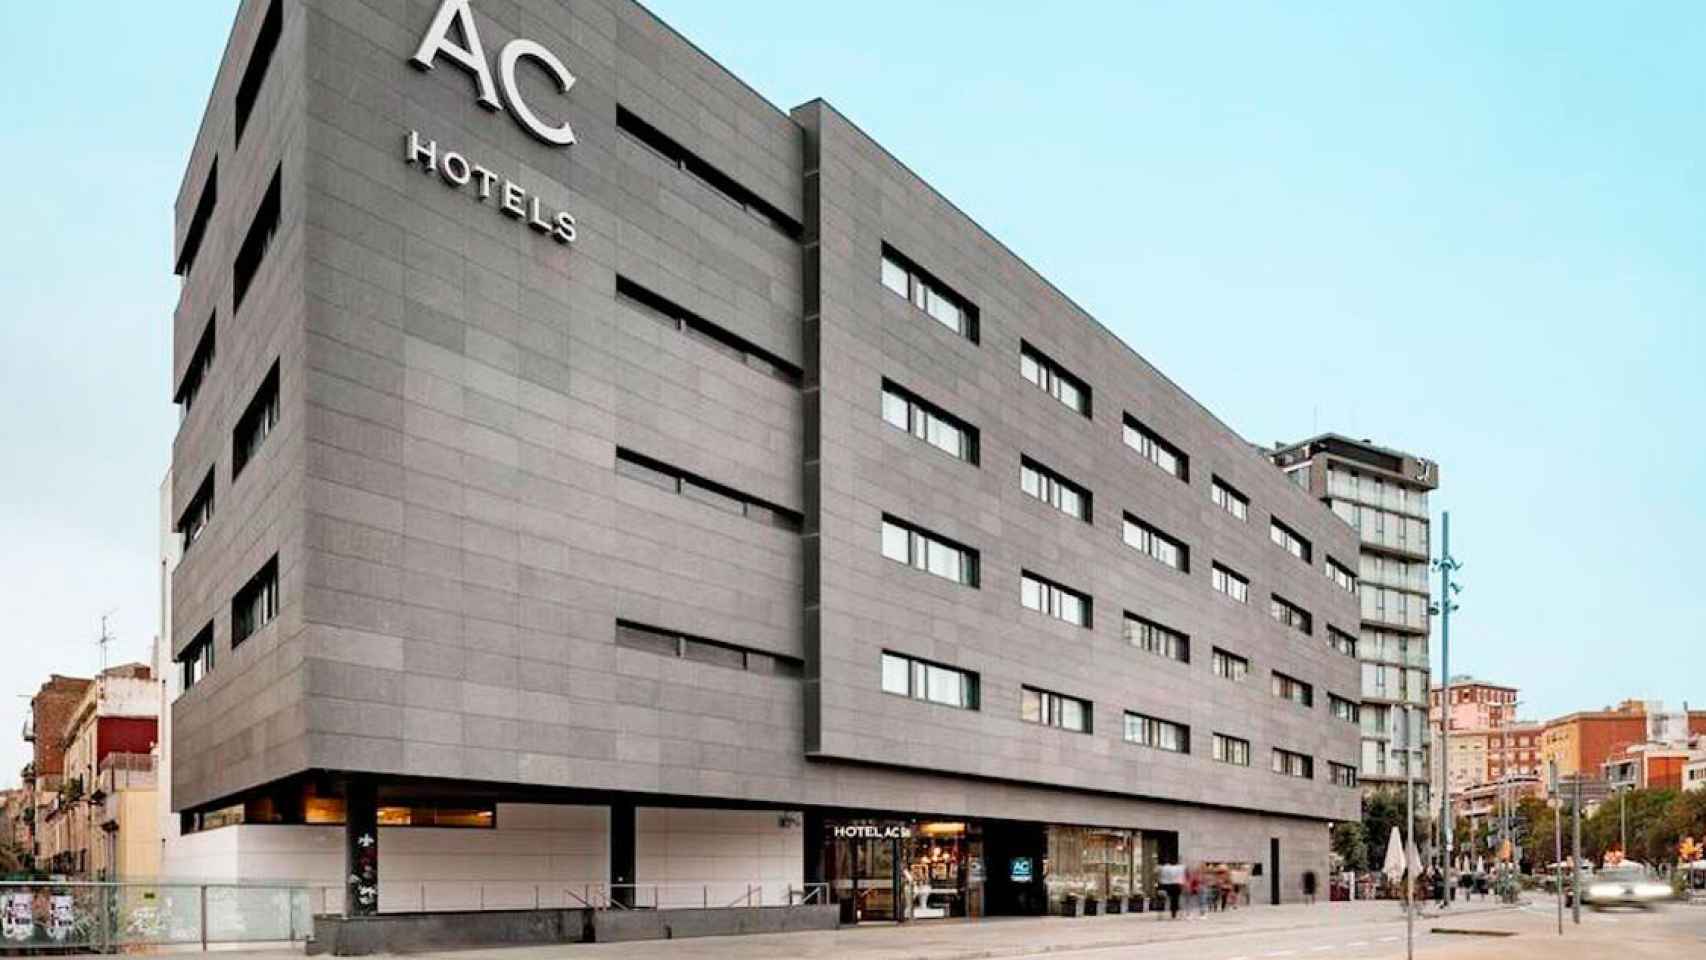 Imagen del hotel AC en el barrio de Sants, en Barcelona / Cedida